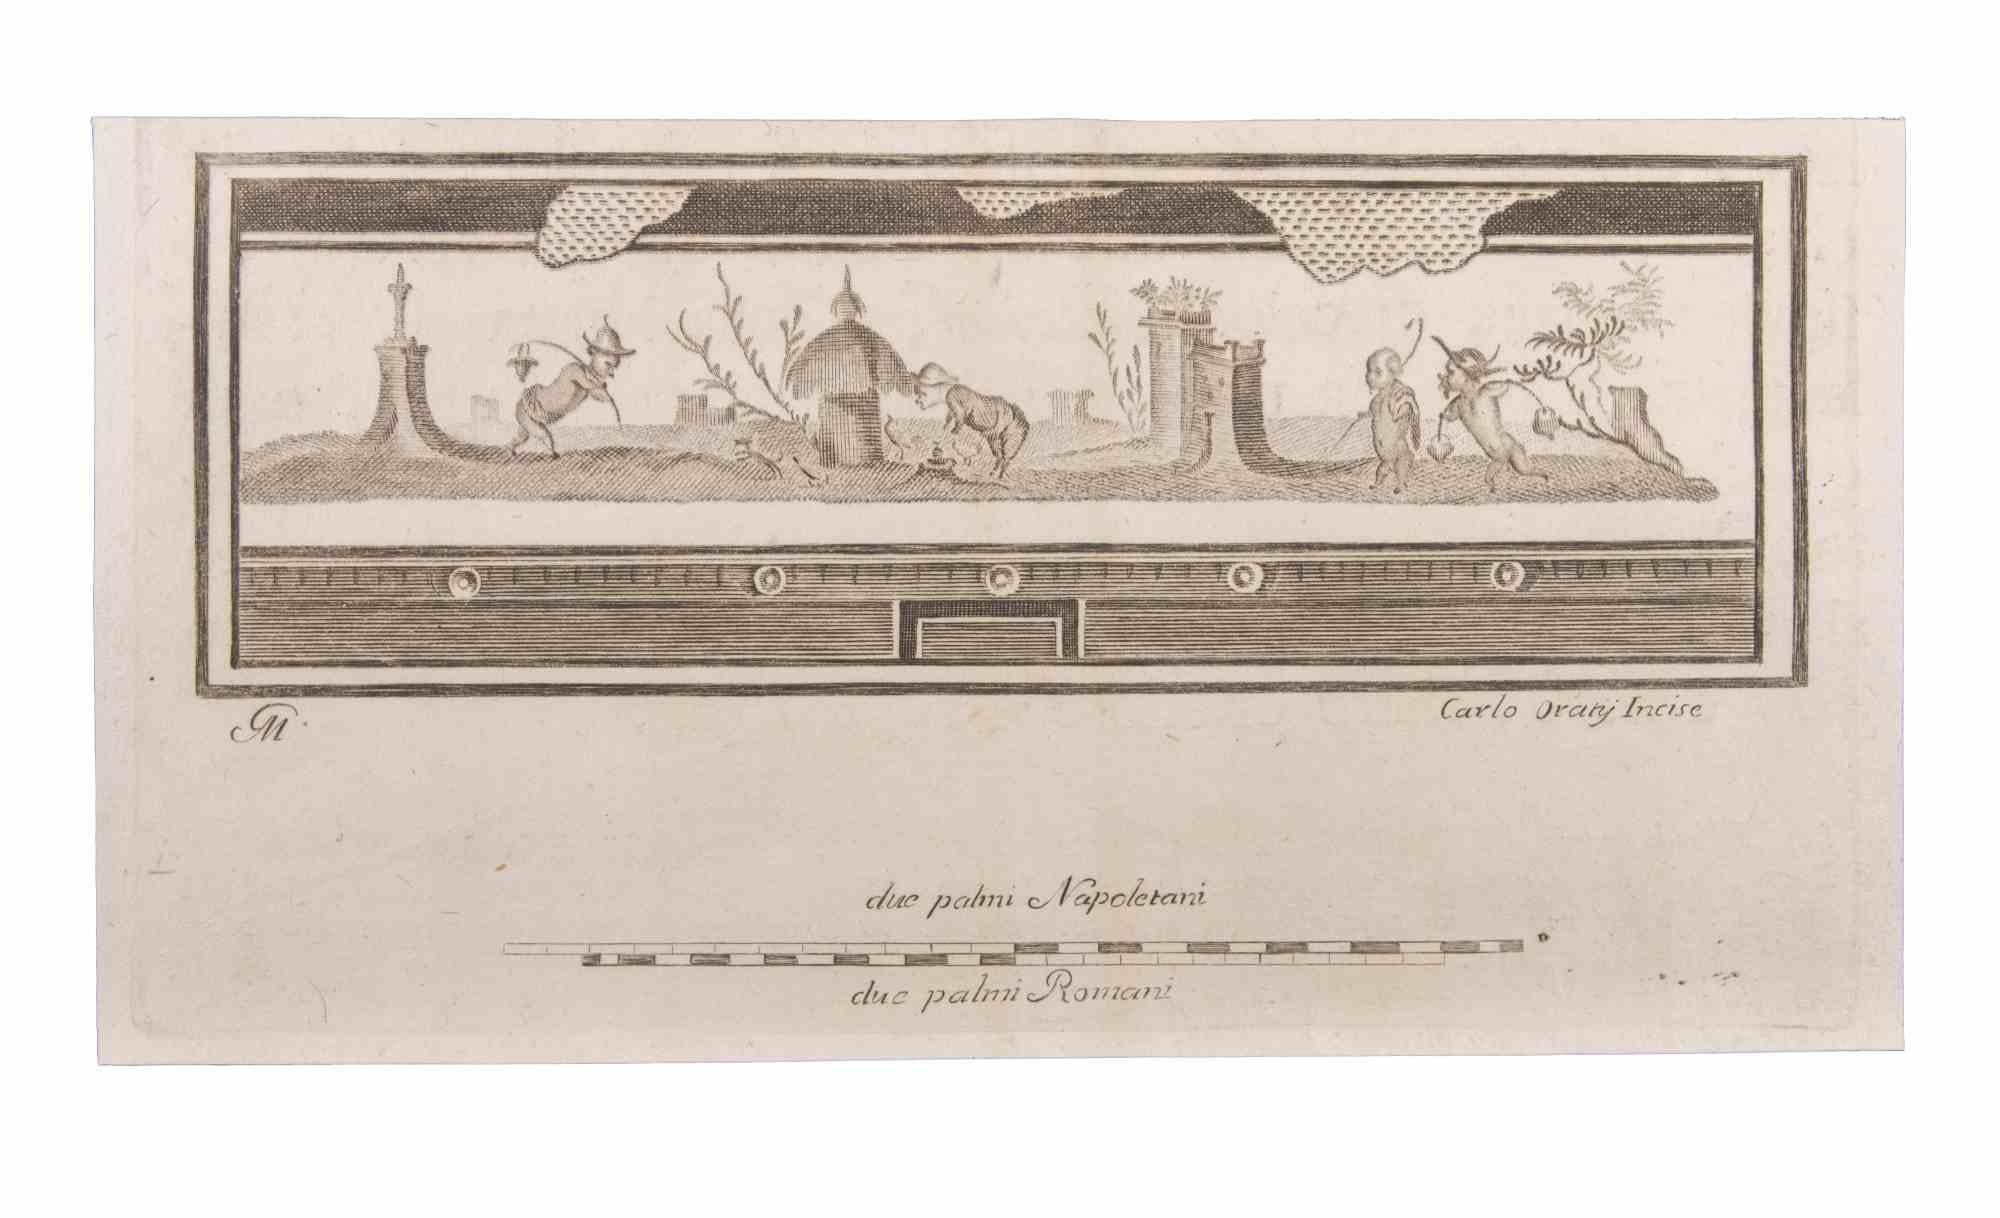 Paysage avec figures et animaux est une gravure réalisée par  Carlo Oraty (18ème siècle).

La gravure appartient à la suite d'estampes "Antiquités d'Herculanum exposées" (titre original : "Le Antichità di Ercolano Esposte"), un volume de huit